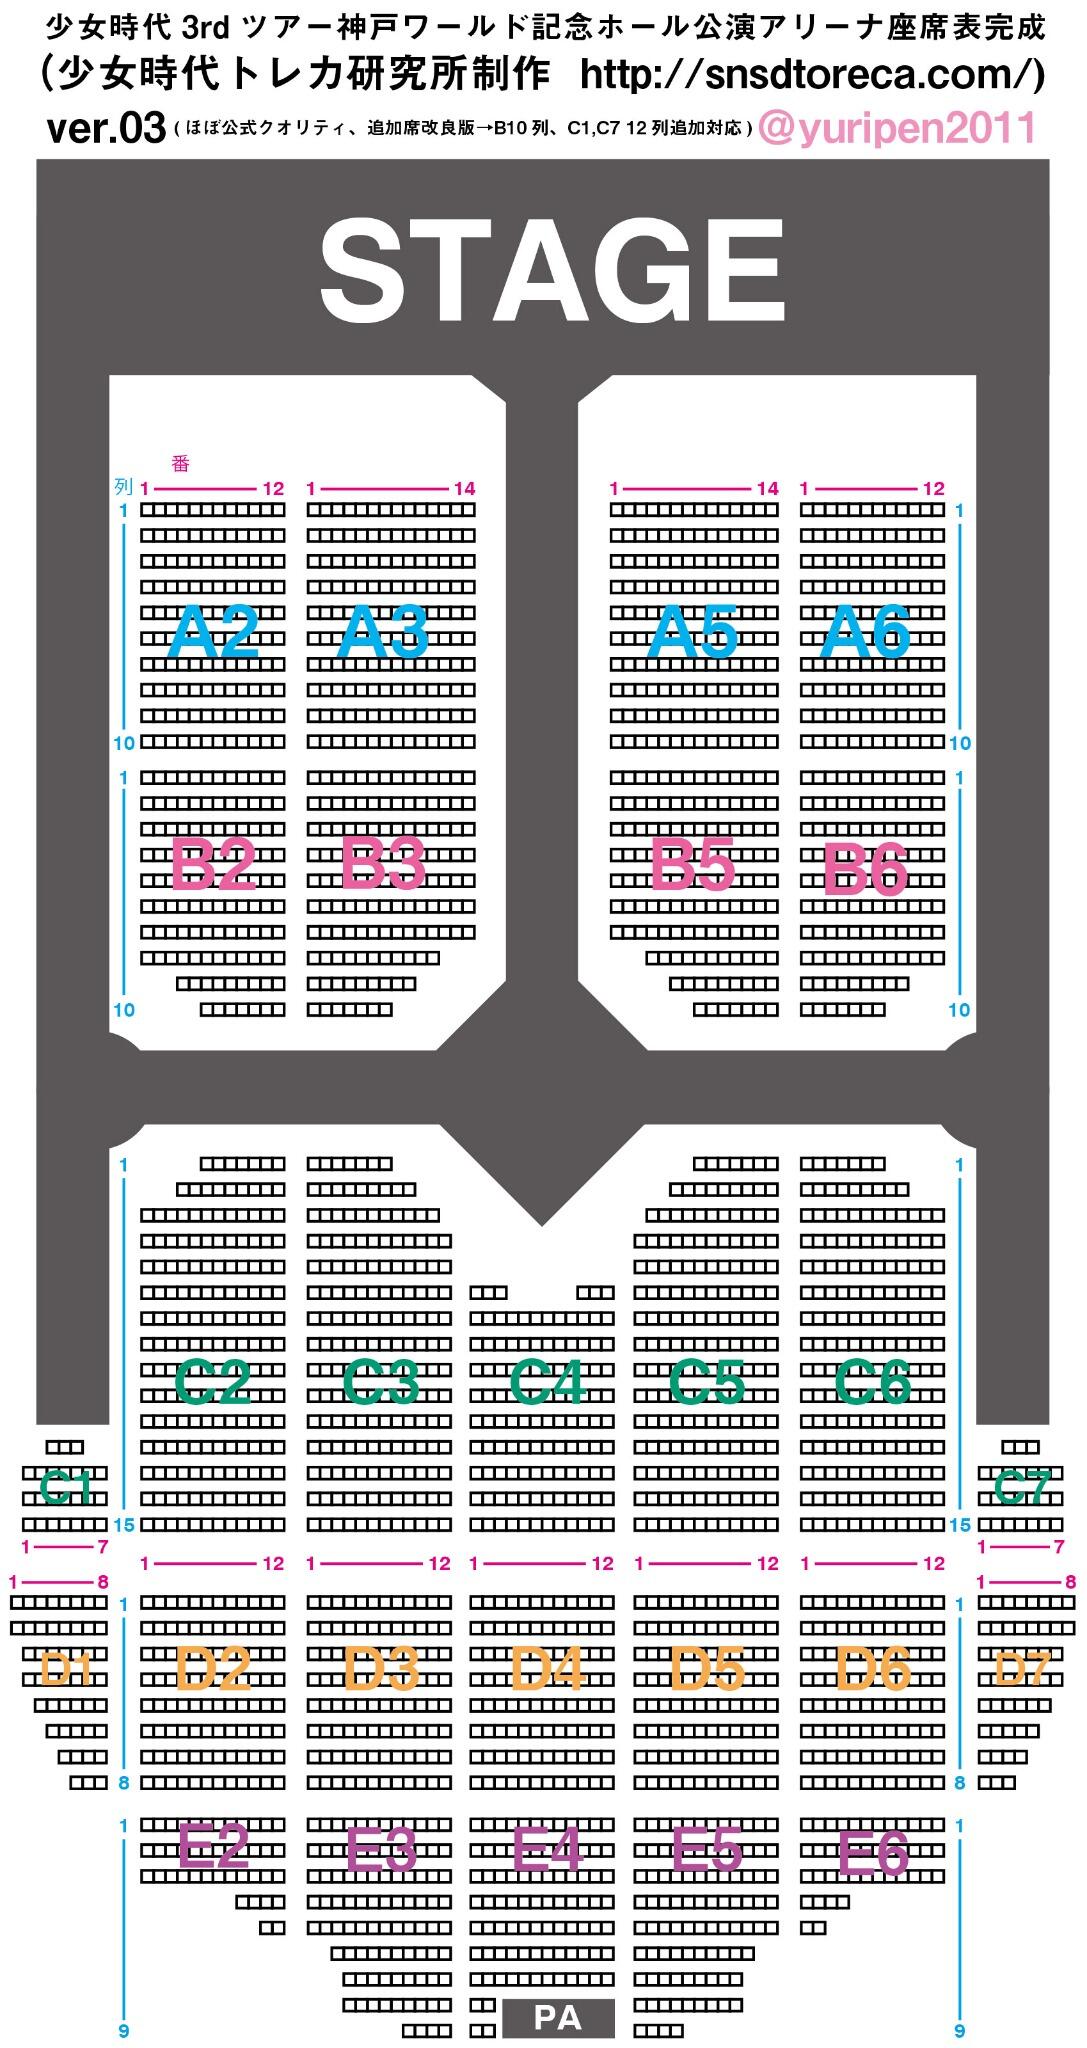 Snsdトレカ ソシコン座席情報 ソシコン3rd 神戸ワールド記念ホール公演アリーナ座席表完成ver3 とうとうこの座席表が公式を超えた笑 会場に貼りだされていた座席表はｂ10列 C1c7の12列の追加席に対応できてないことが判明